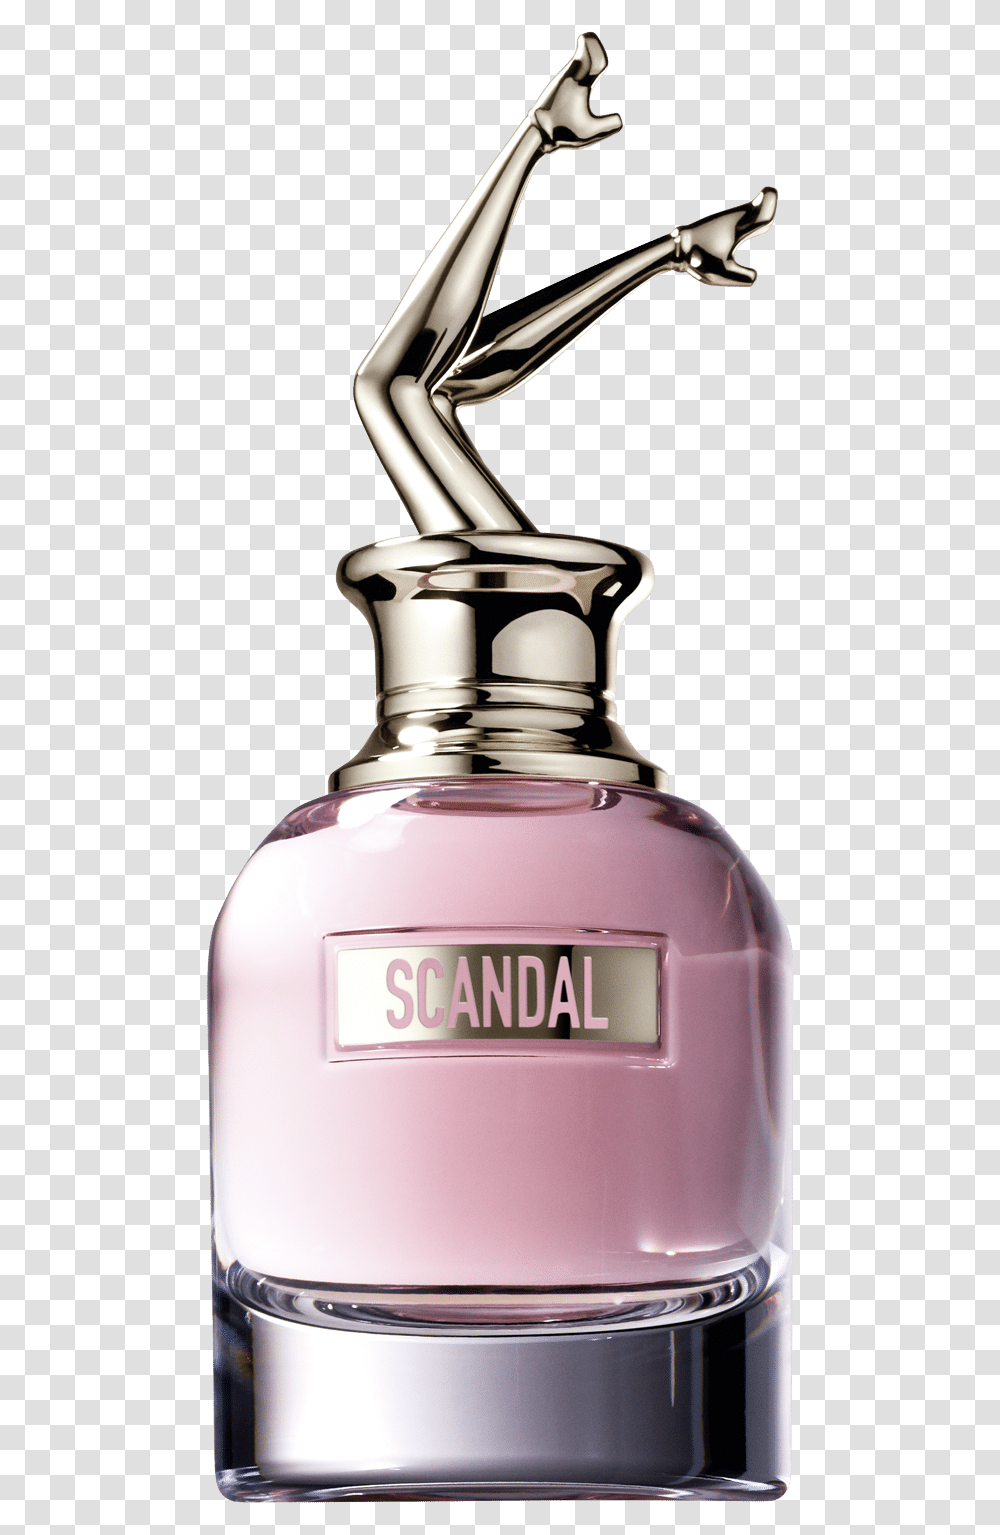 Jean Paul Gaultier Scandal A Paris Edt, Bottle, Perfume, Cosmetics, Sink Faucet Transparent Png